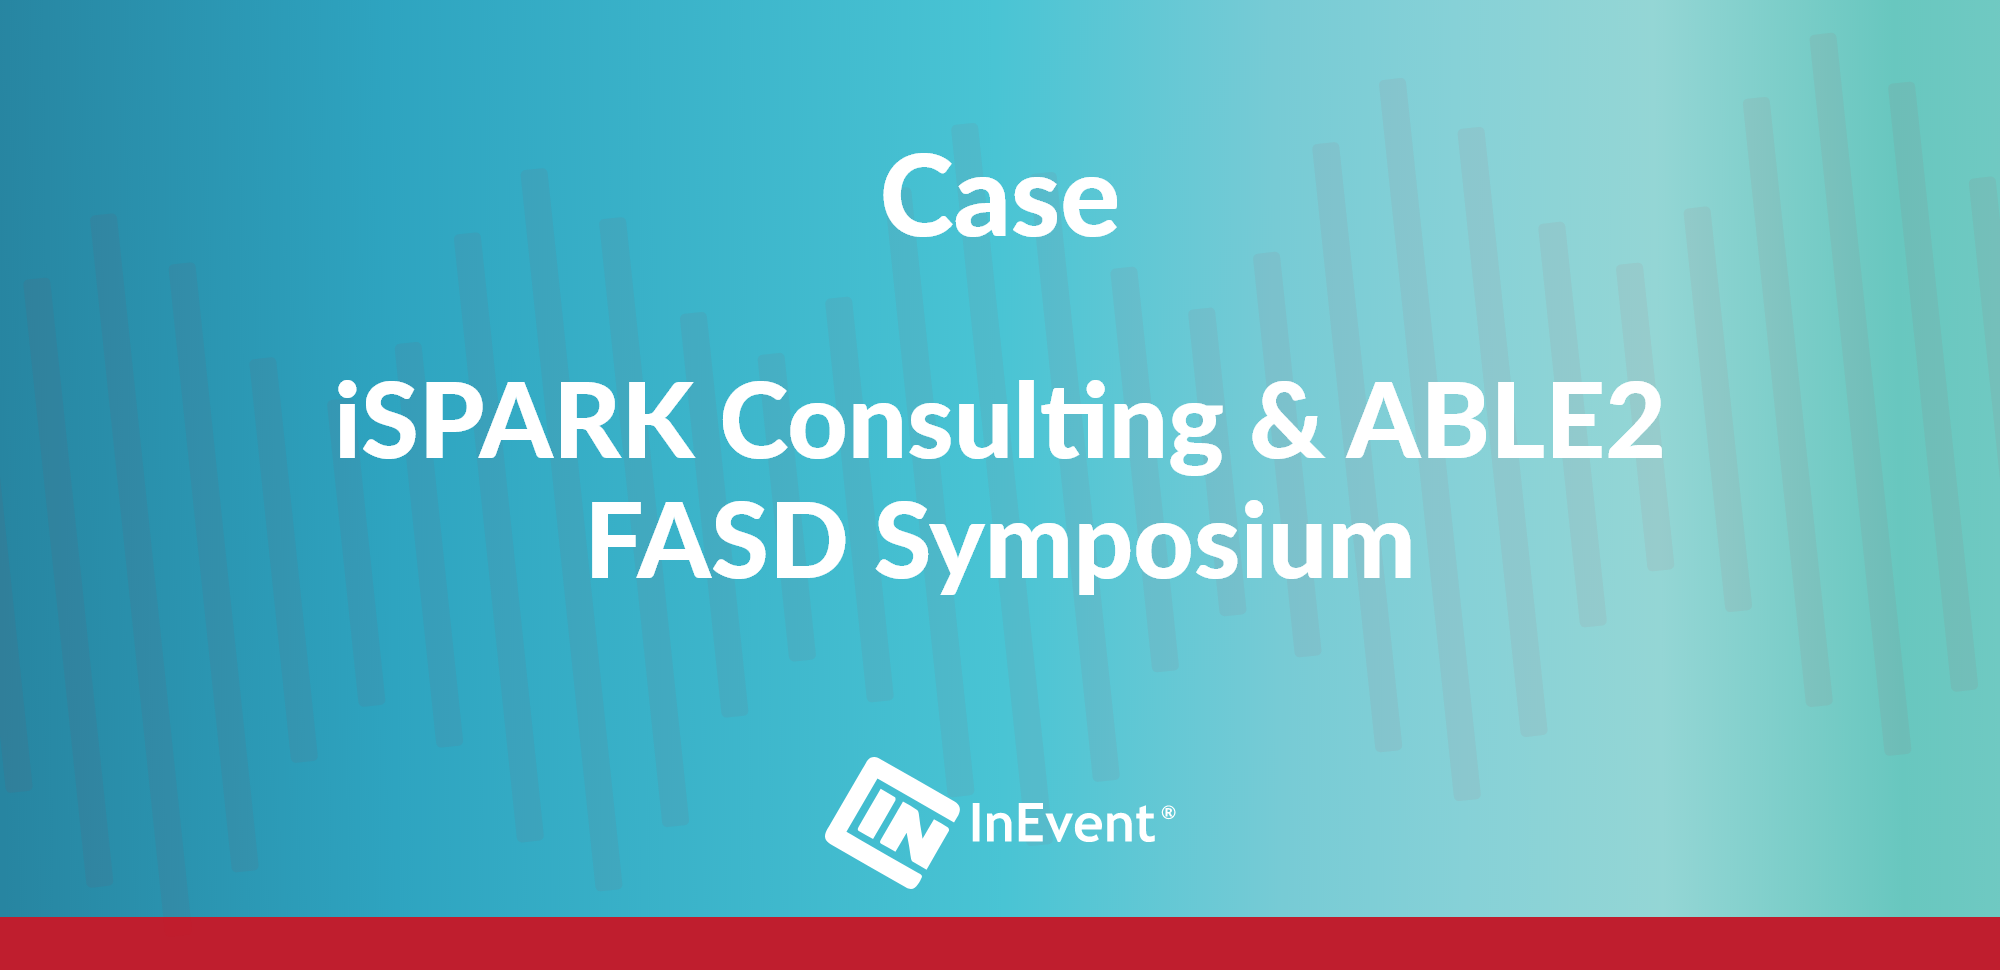 iSPARK Consulting & ABLE2 - Simposio sobre el FASD